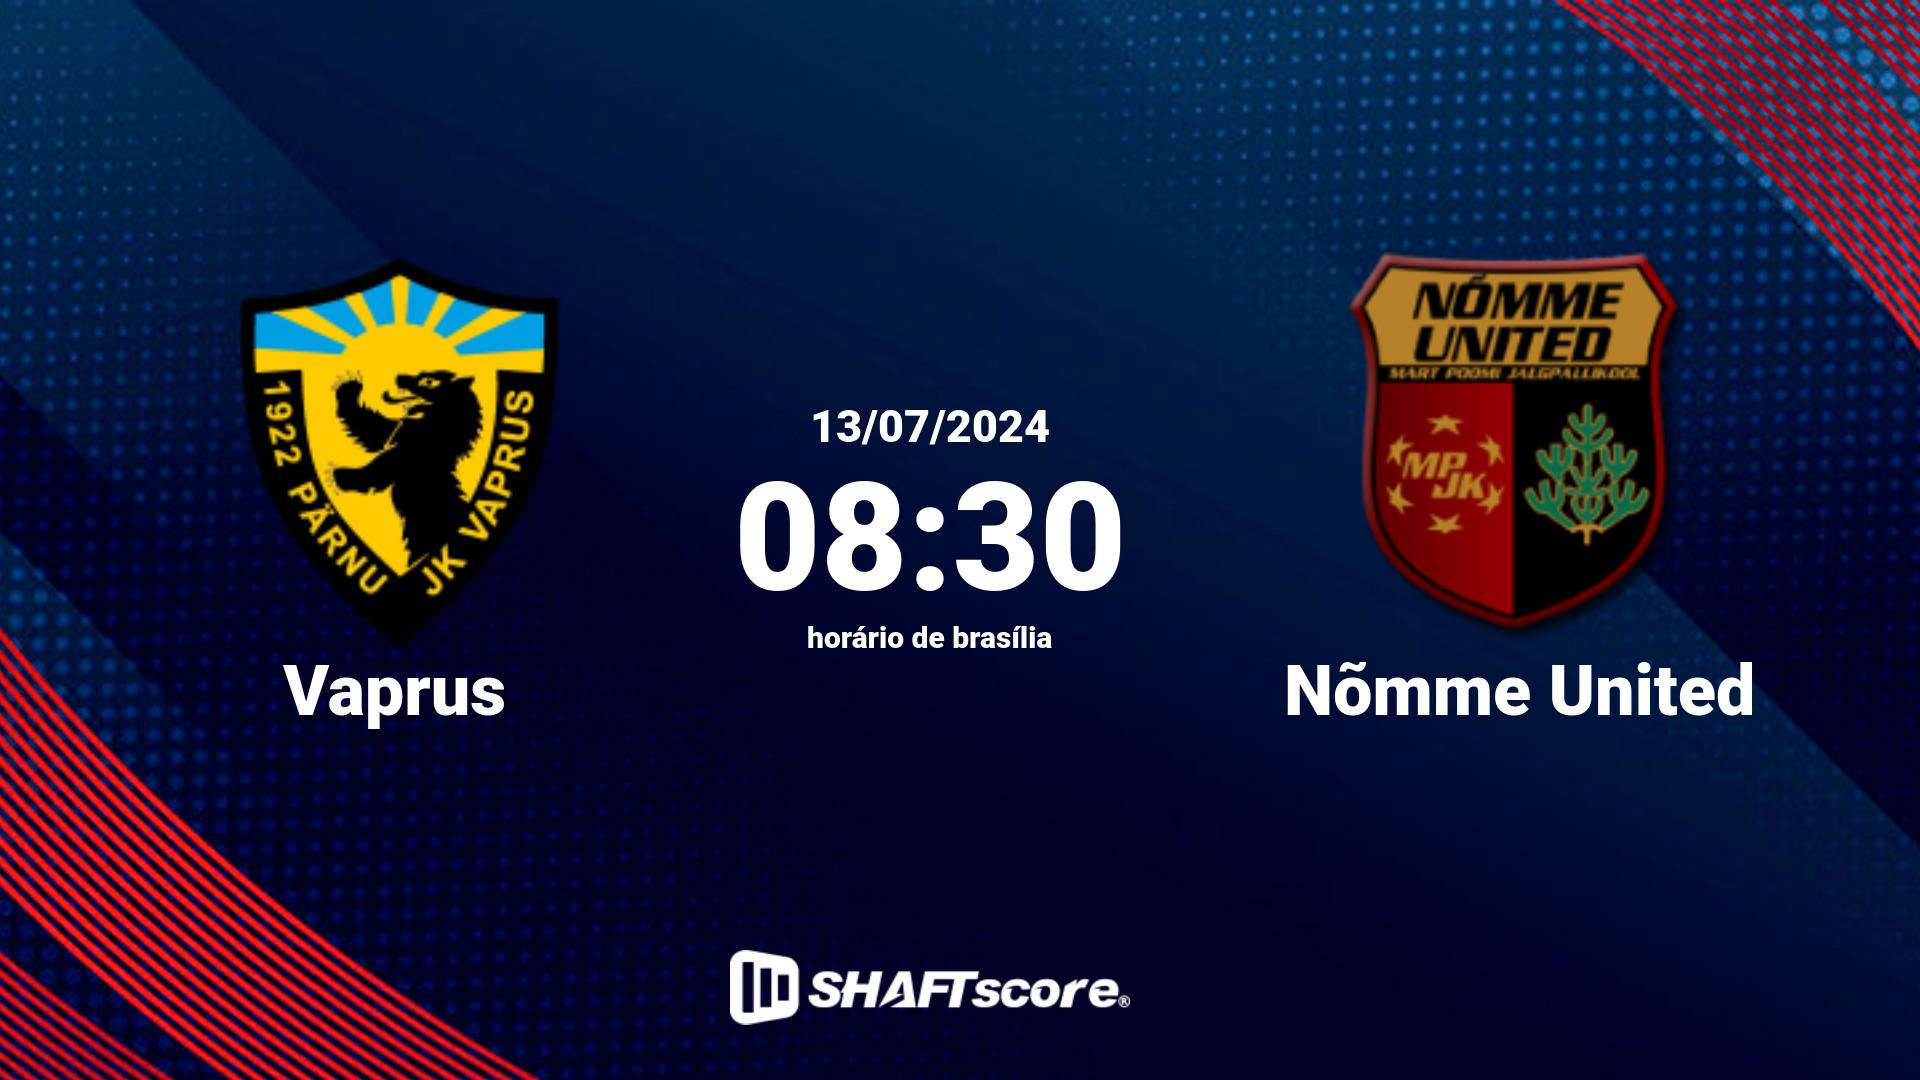 Estatísticas do jogo Vaprus vs Nõmme United 13.07 08:30